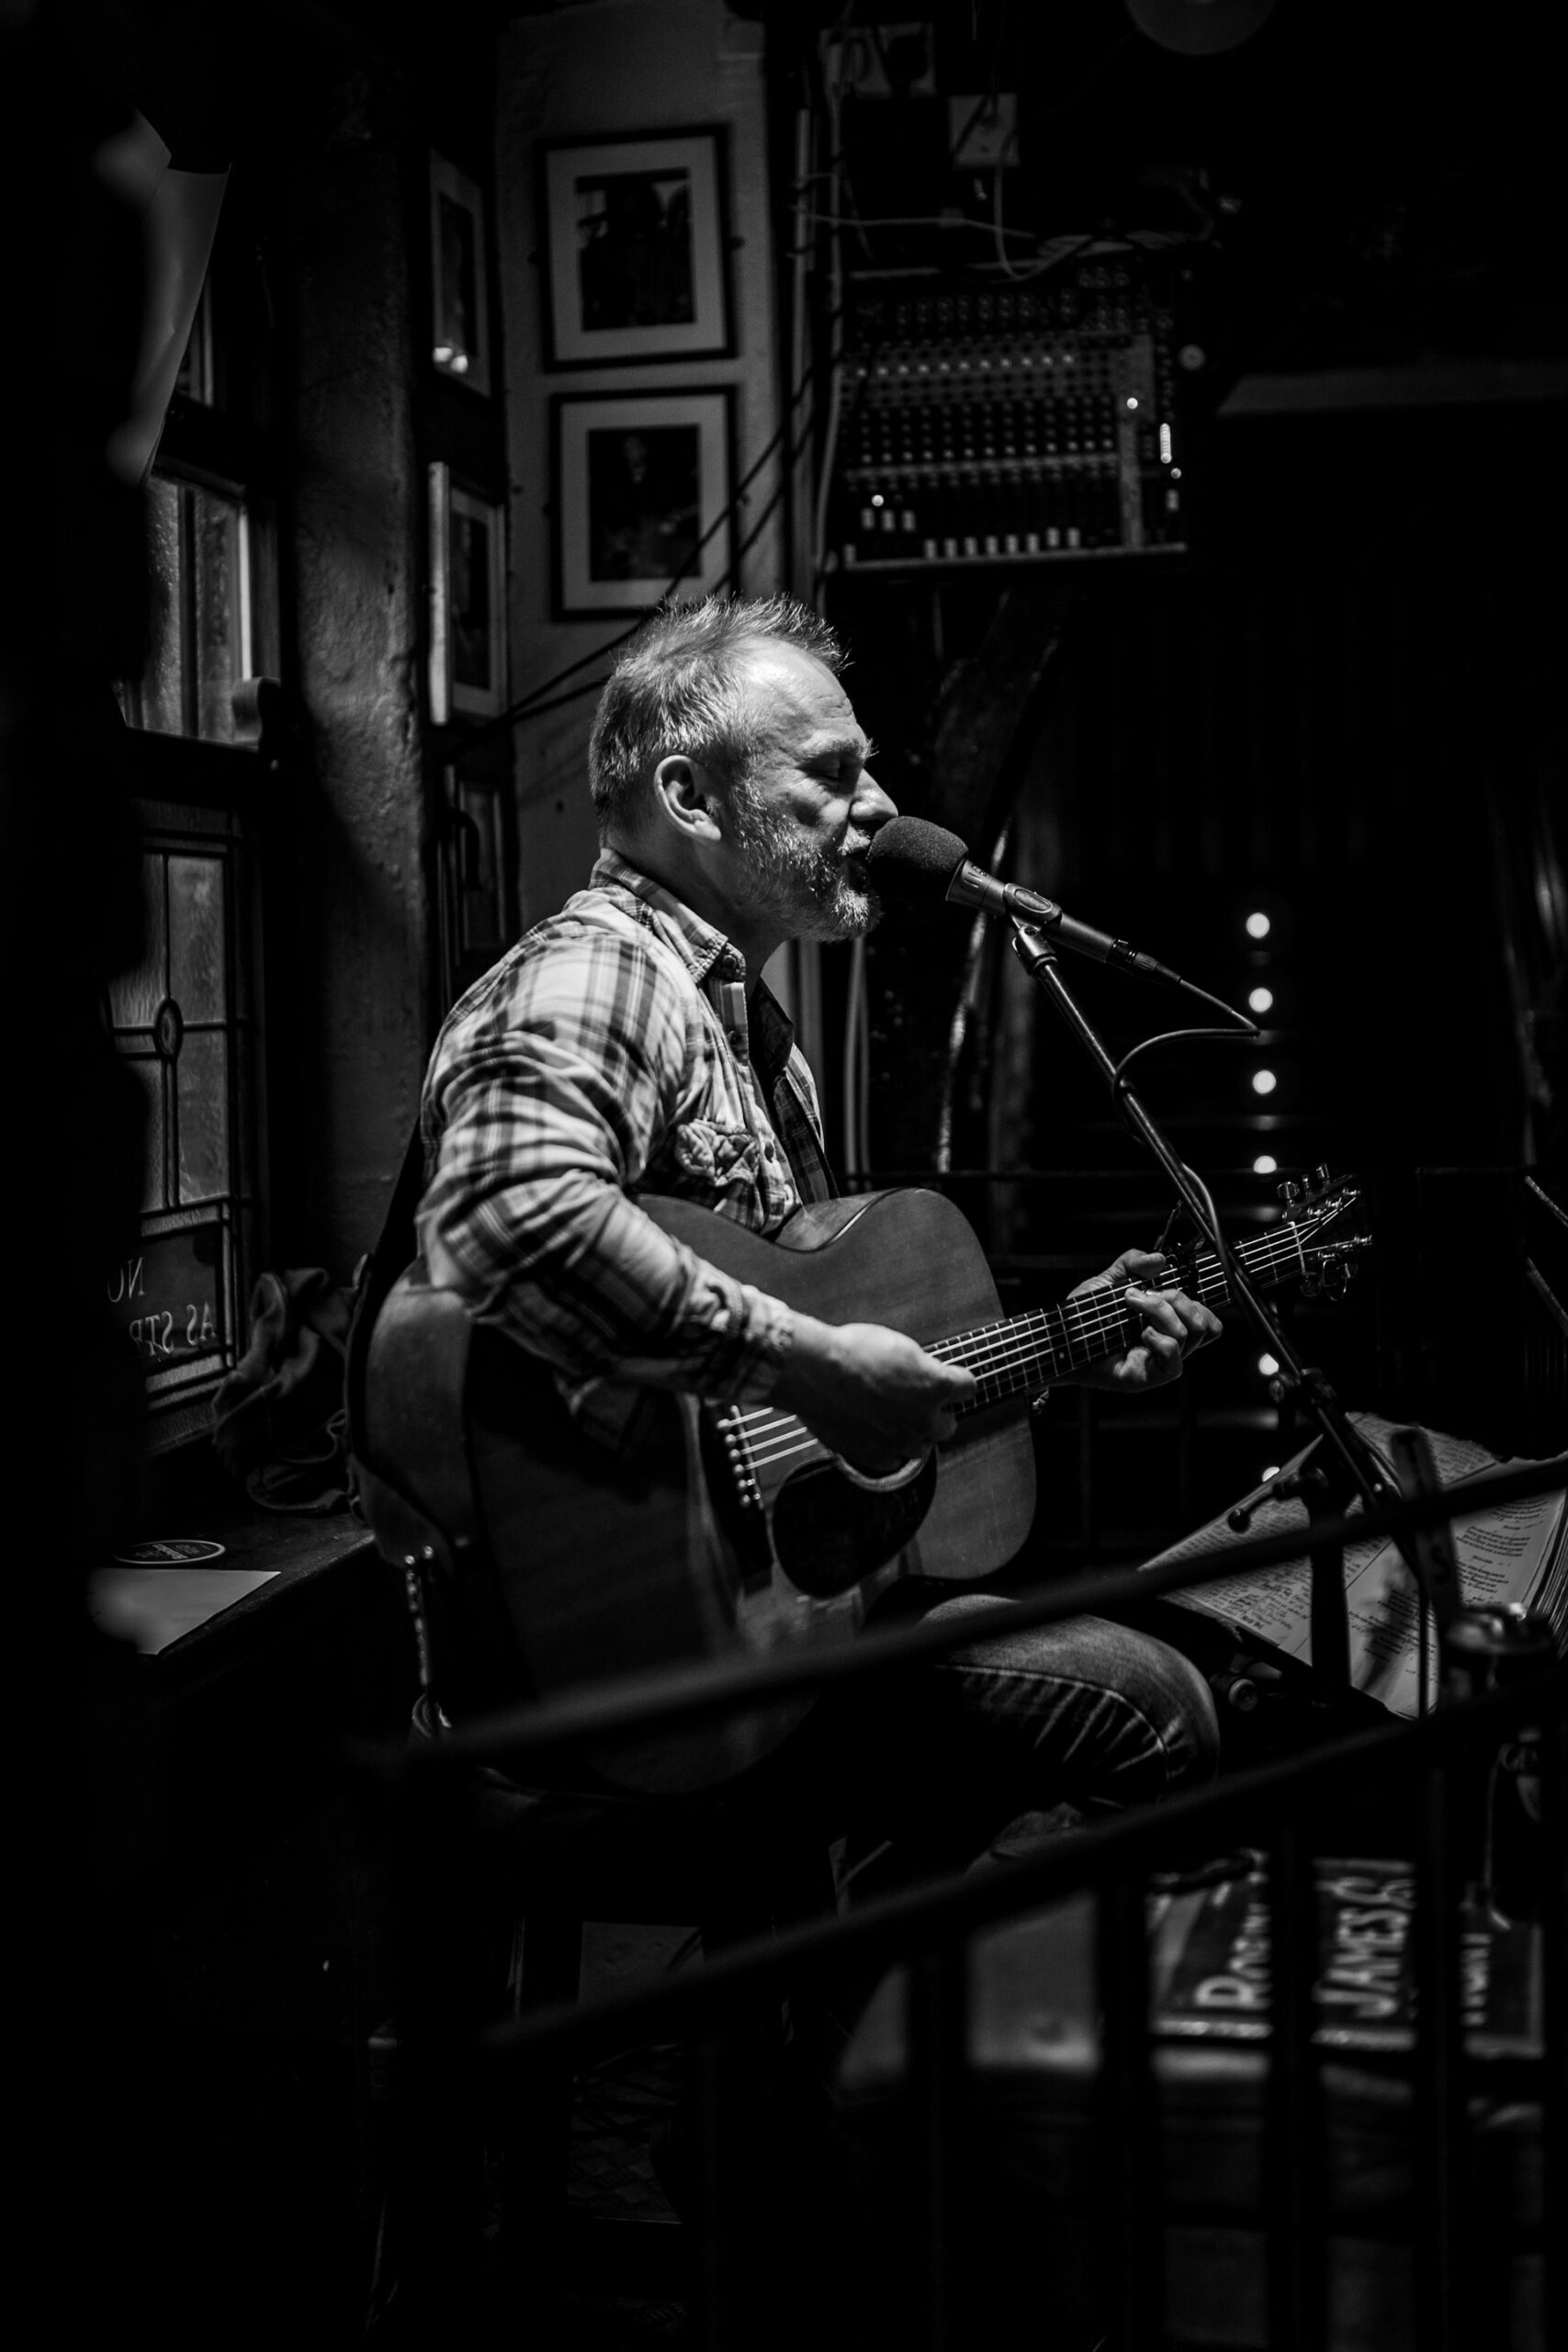 Singer at a Dublin bar (photo: Daniel Angele).